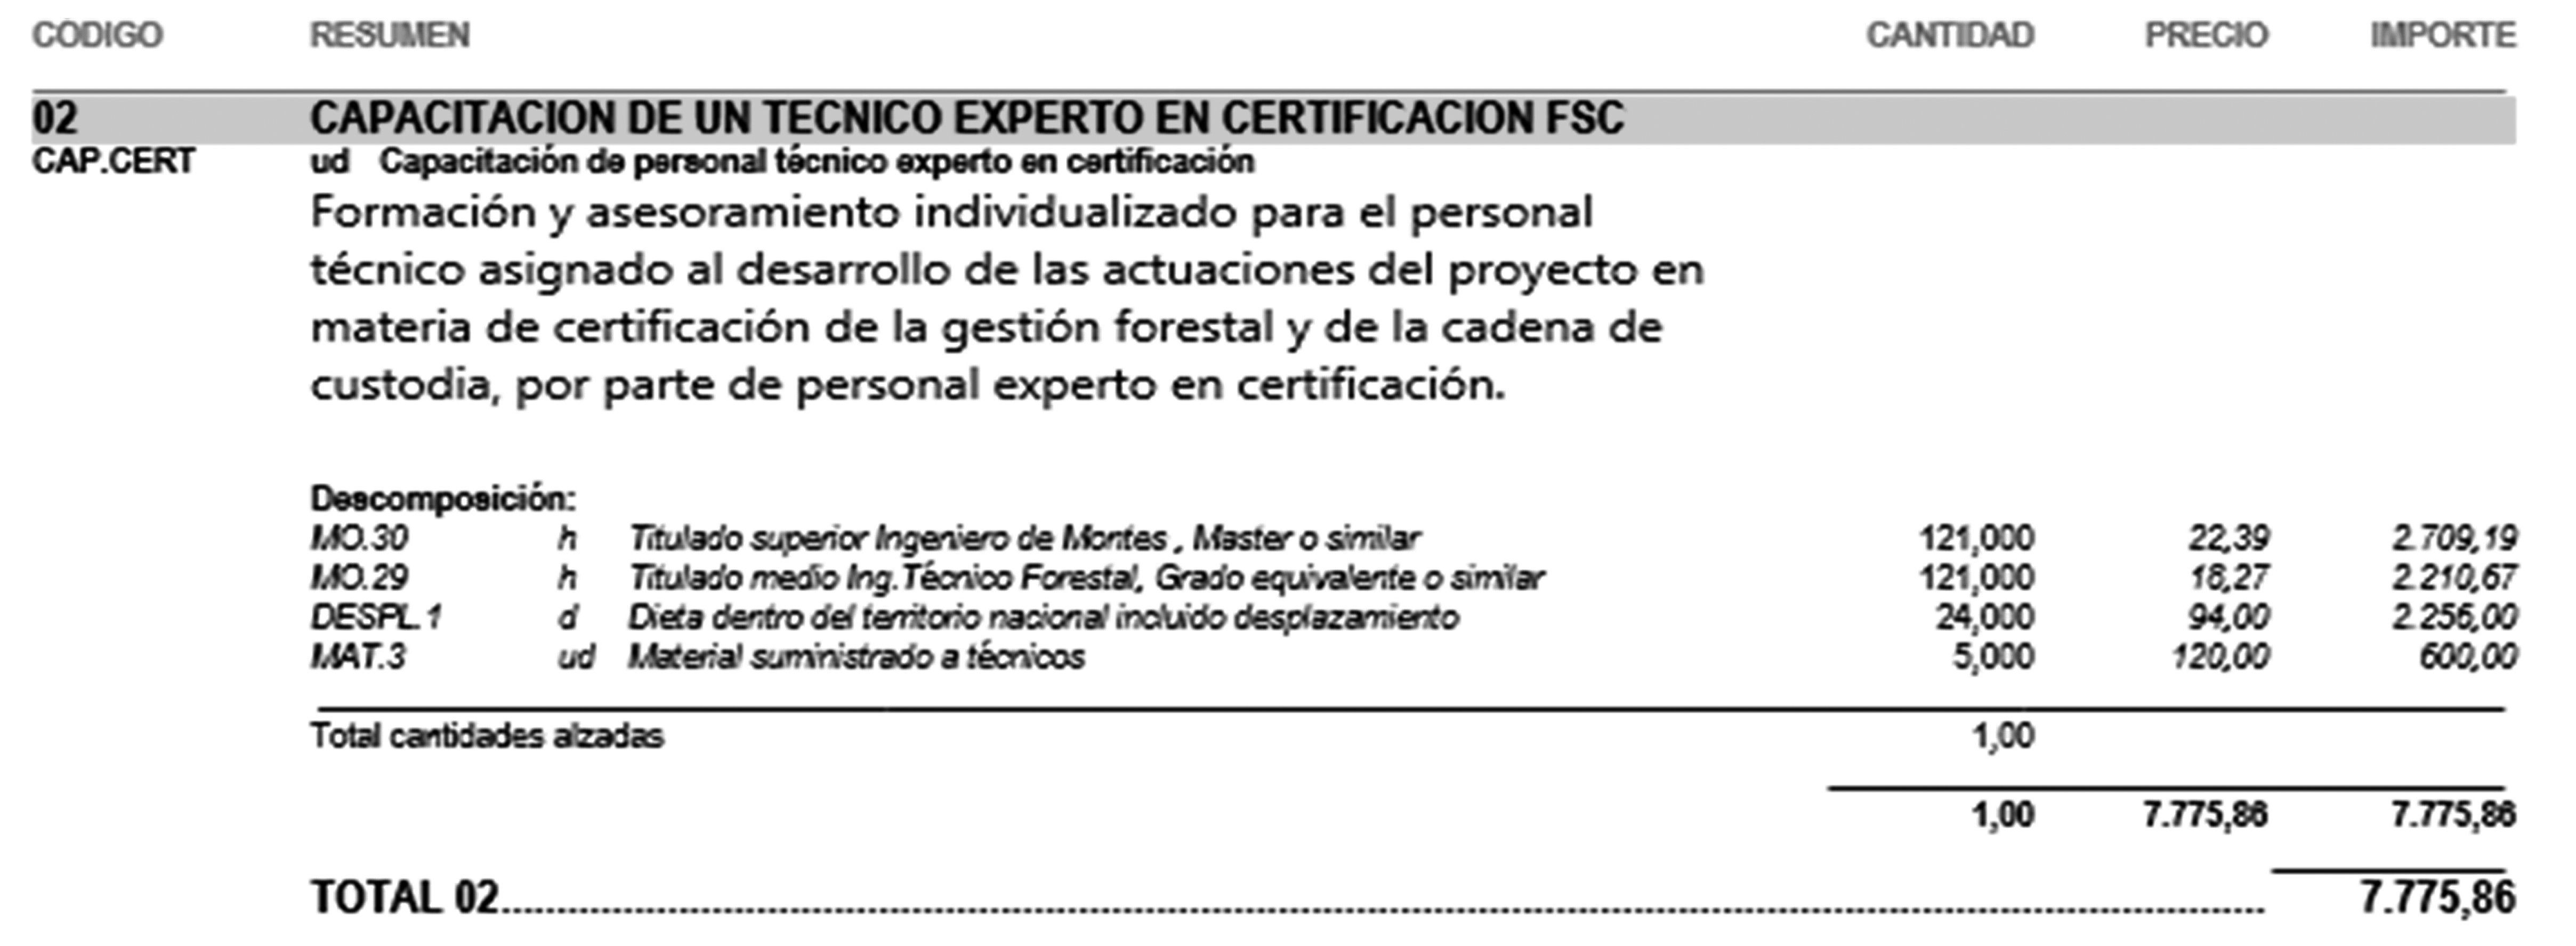 CAPACITACION DE UN TECNICO EXPERTO EN CERTIFICACION FSC